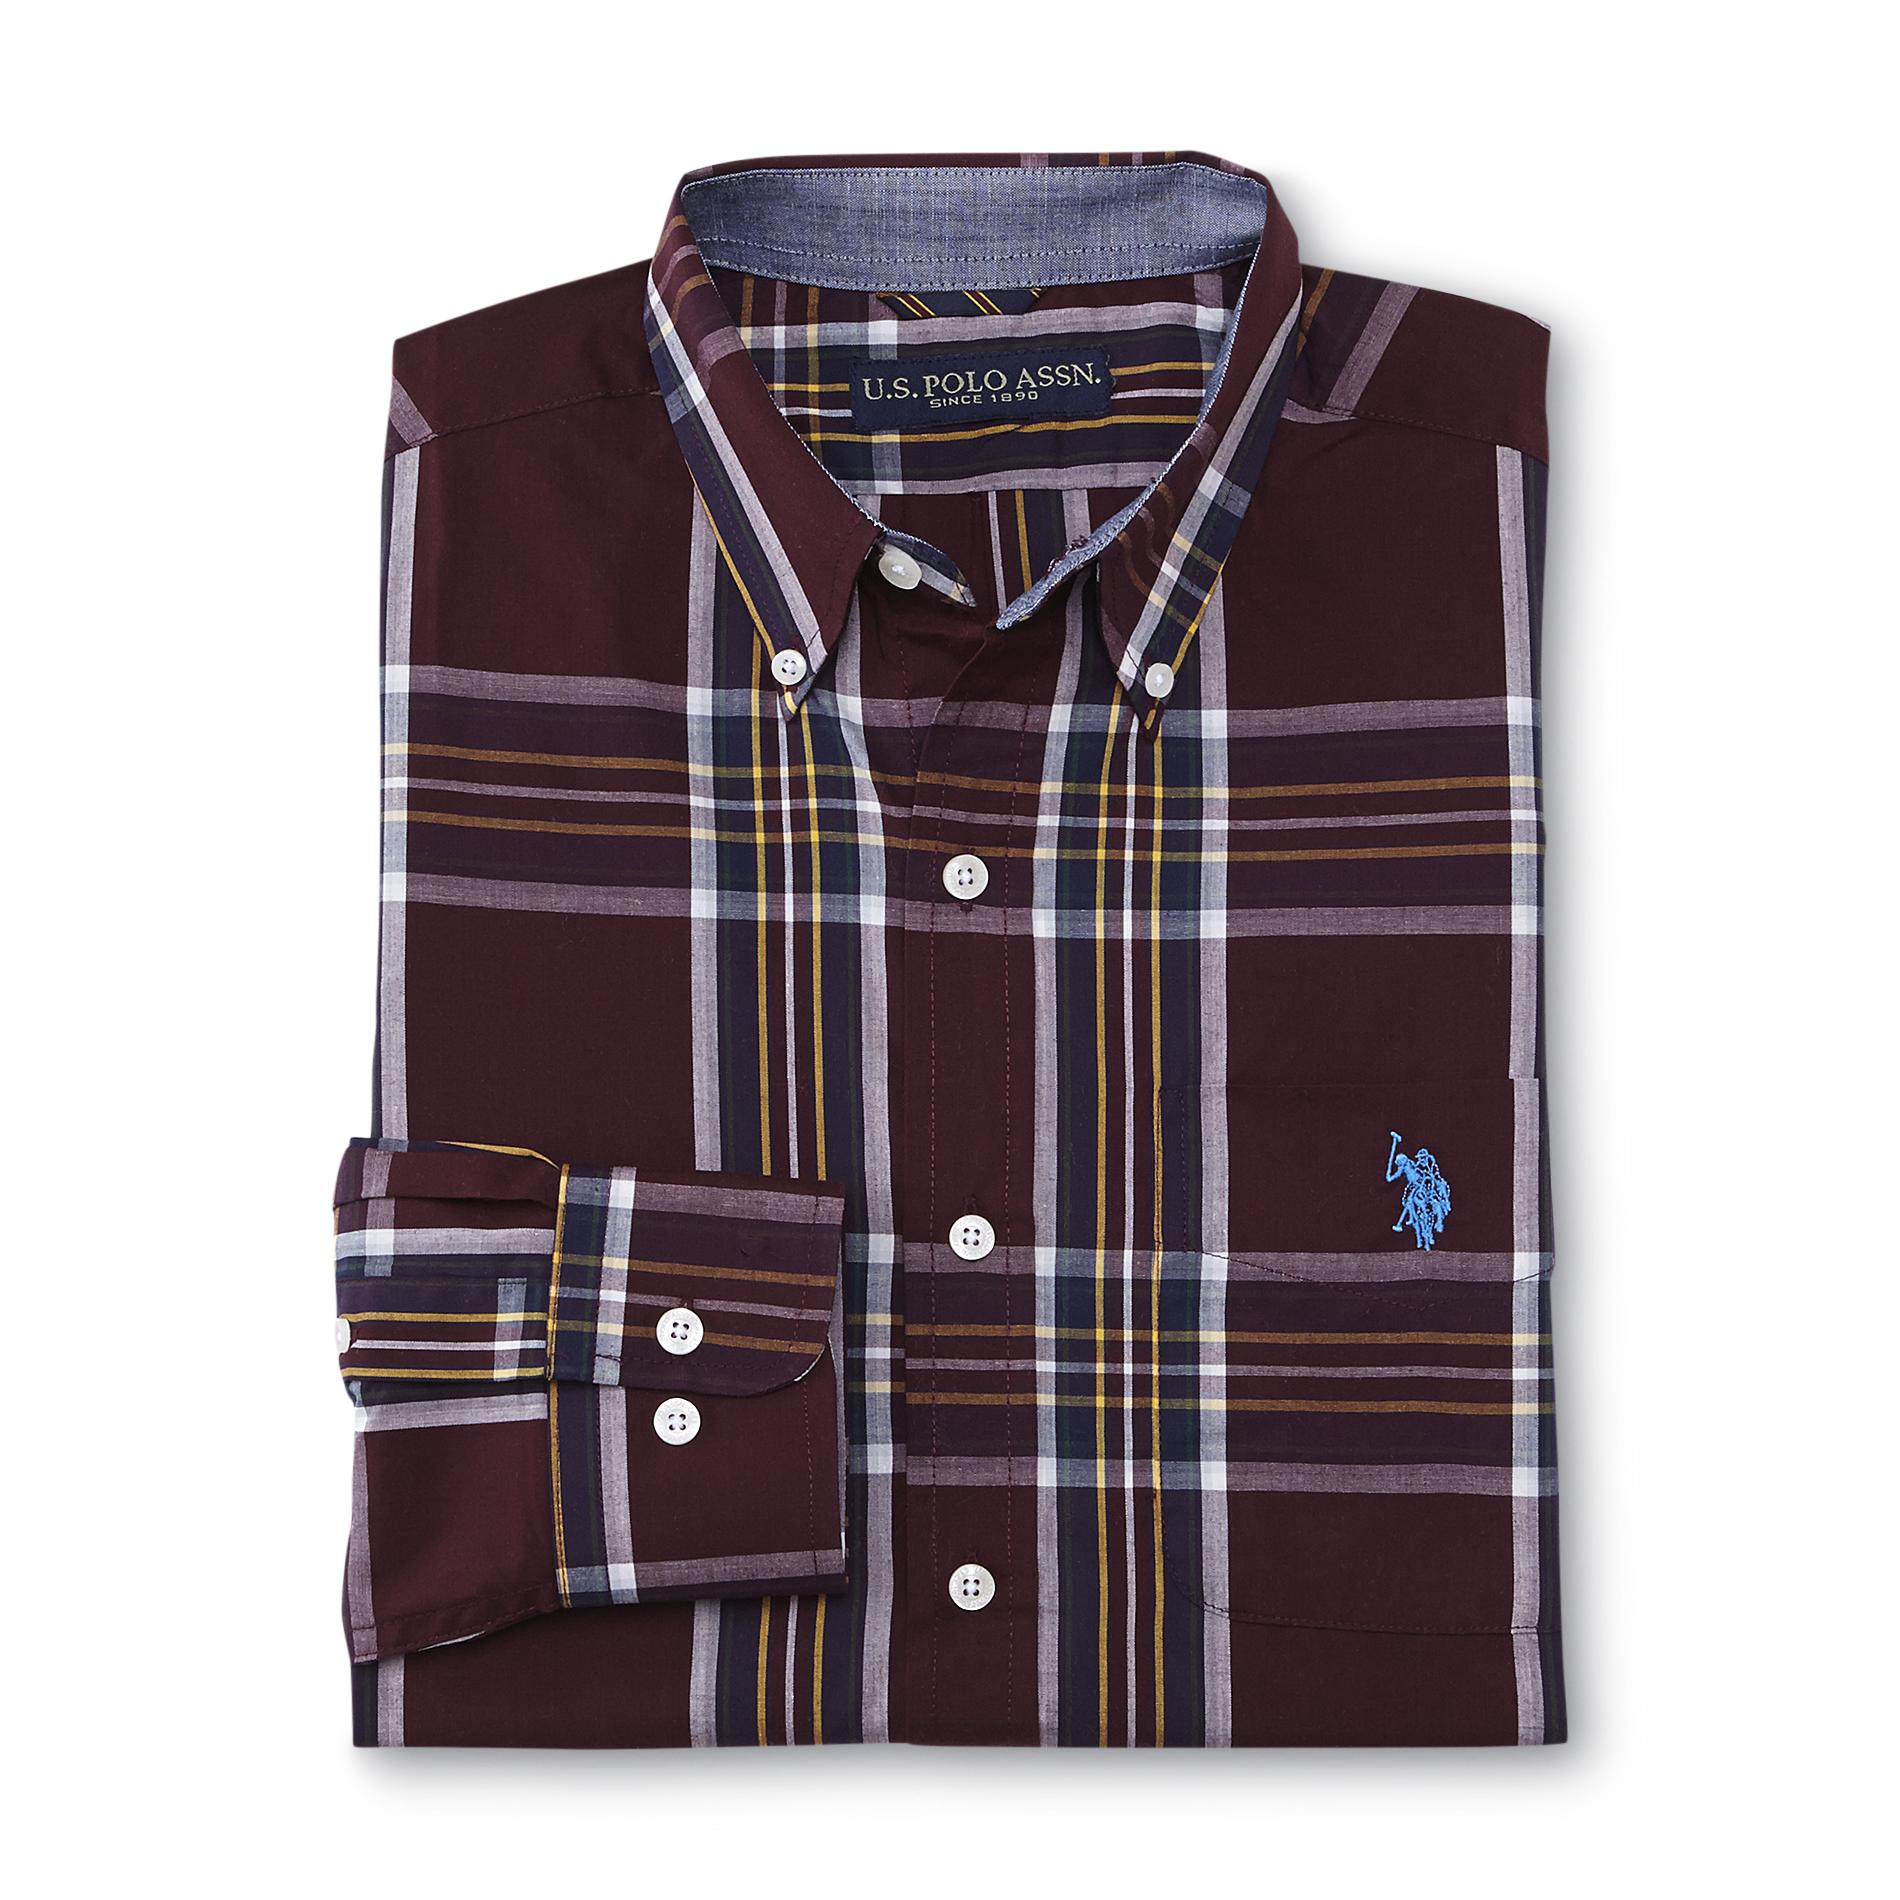 U.S. Polo Assn. Men's Button-Front Shirt - Plaid